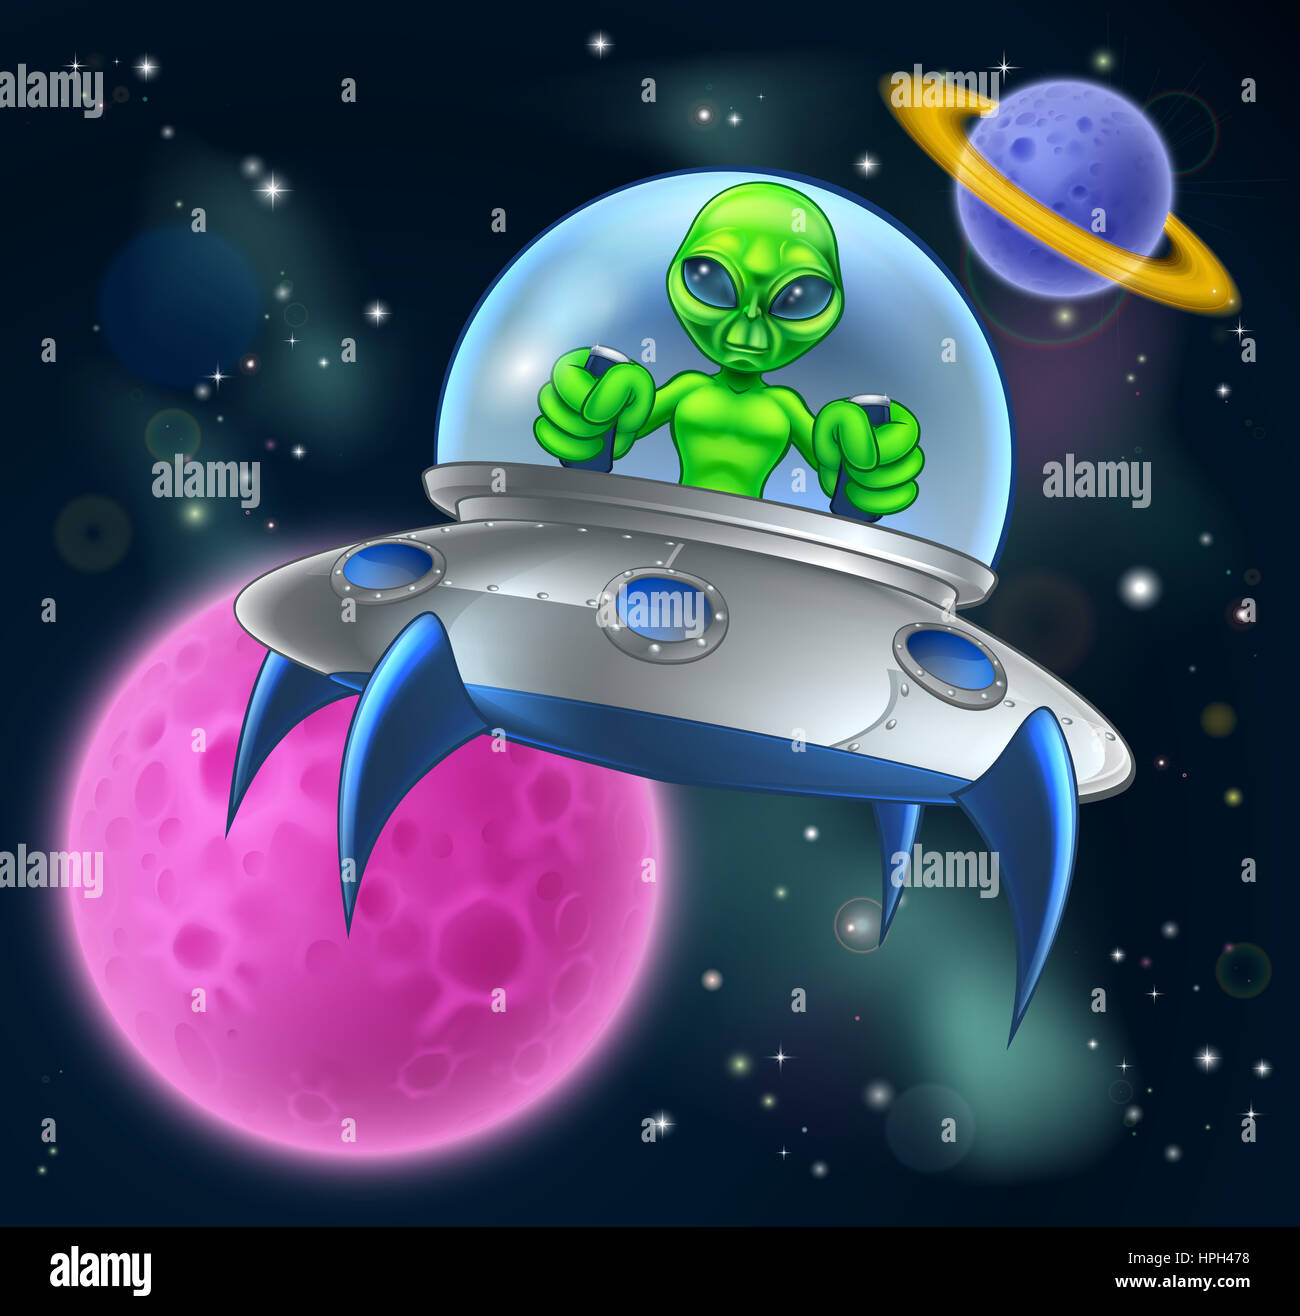 Caricature ou extraterrestre soucoupe volante dans l'espace scène avec un lunes et planètes dans l'arrière-plan Banque D'Images